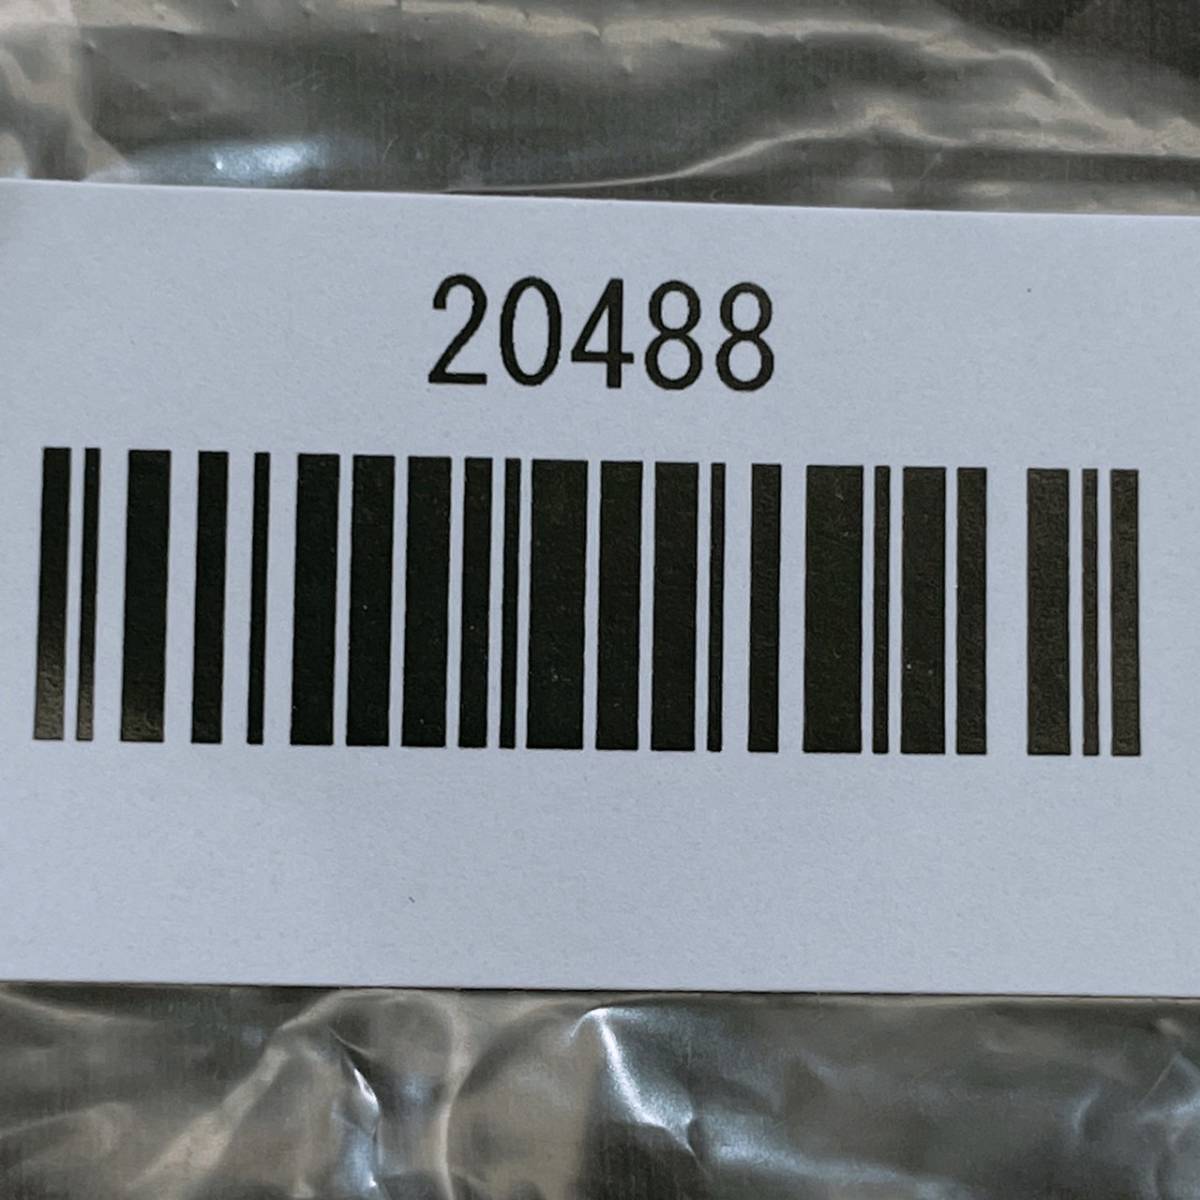 【20488】 CARLOPIK カルロピック レディース トップス シャツ 半袖シャツ カジュアルシャツ ジュエルネック 装飾 ロゴ入り ブラウン 42 XL